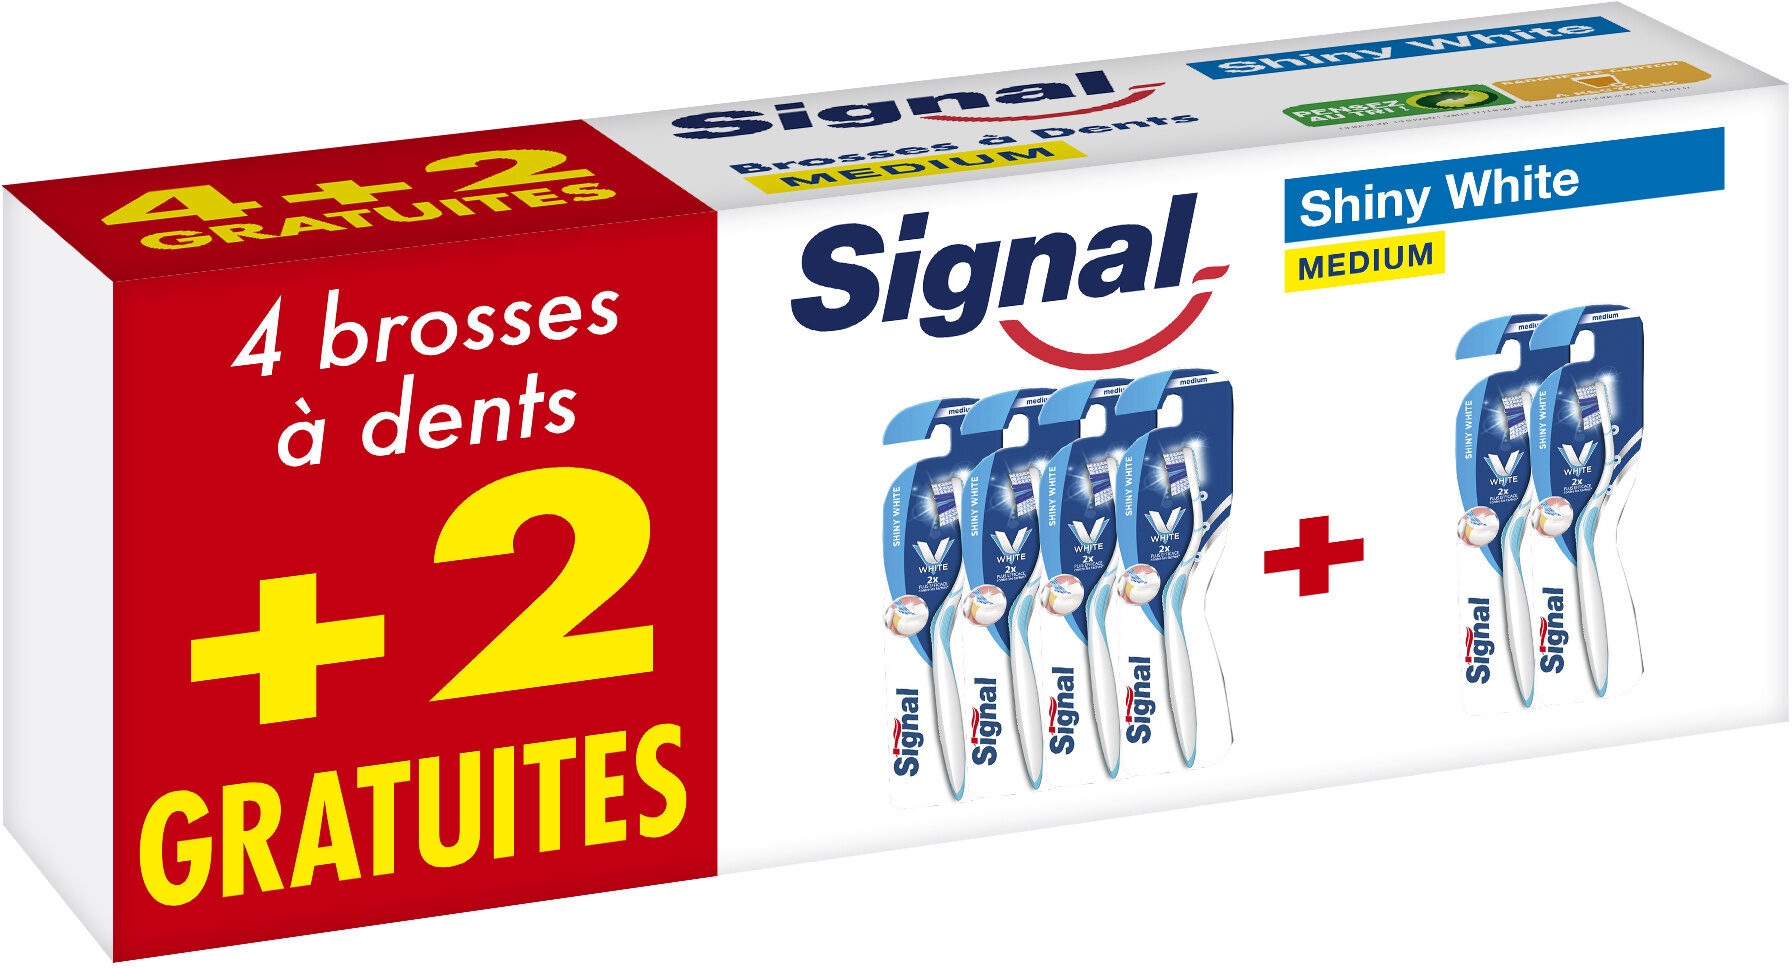 Signal Brosse à Dents Shiny White Medium Lot de 6(4+2 Gratuits) - Product - fr